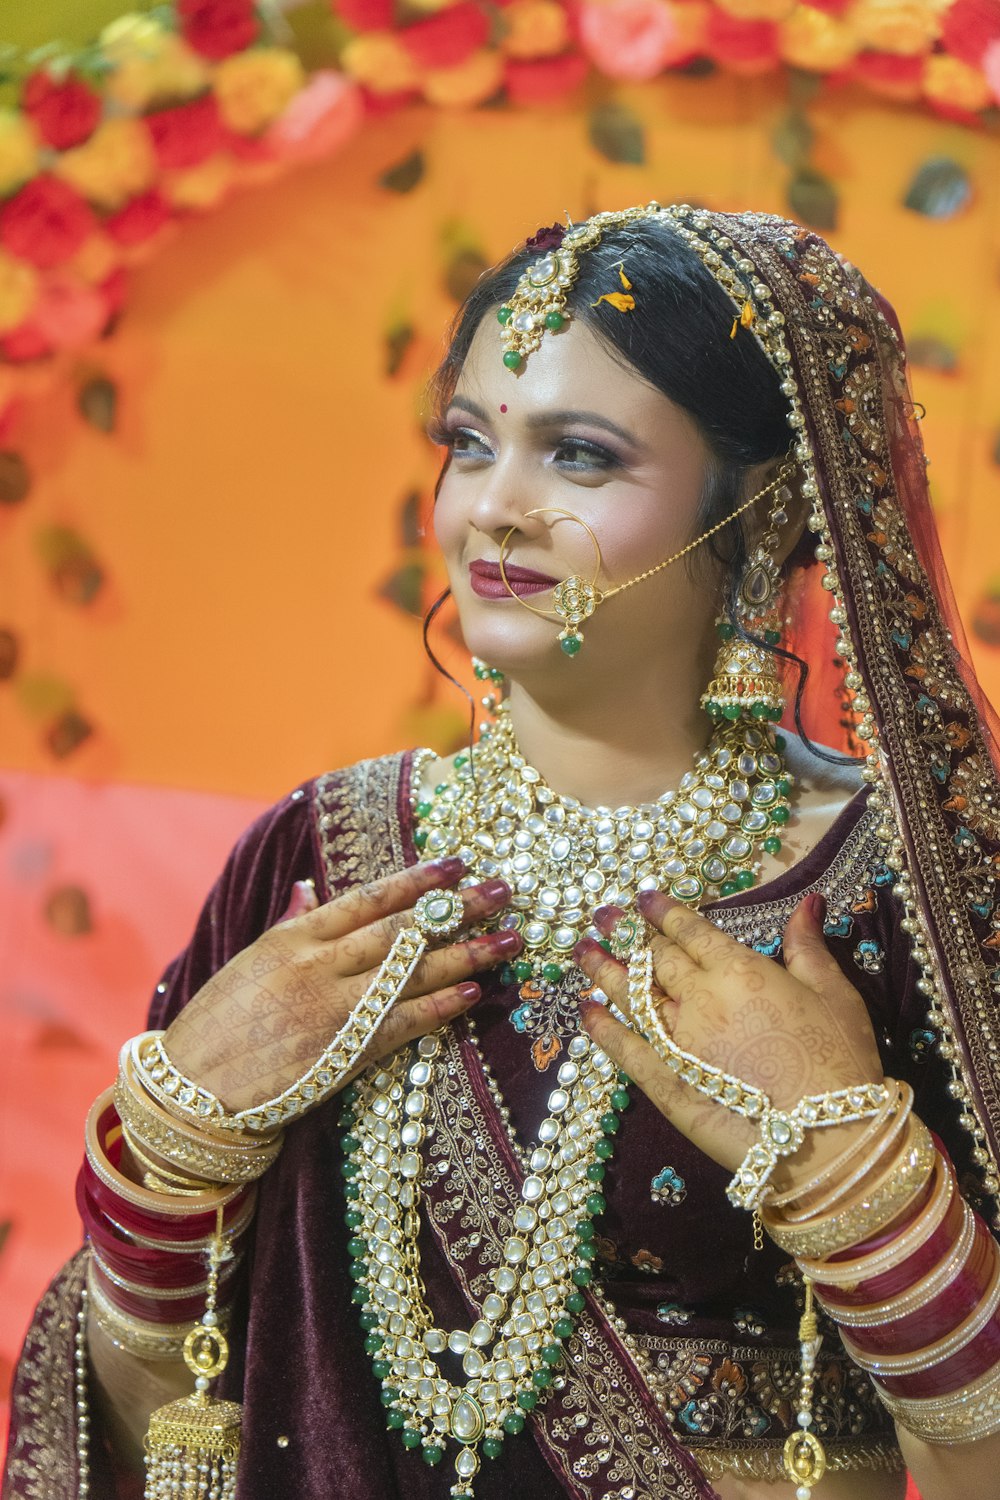 인도 전통 의상을 입은 여성